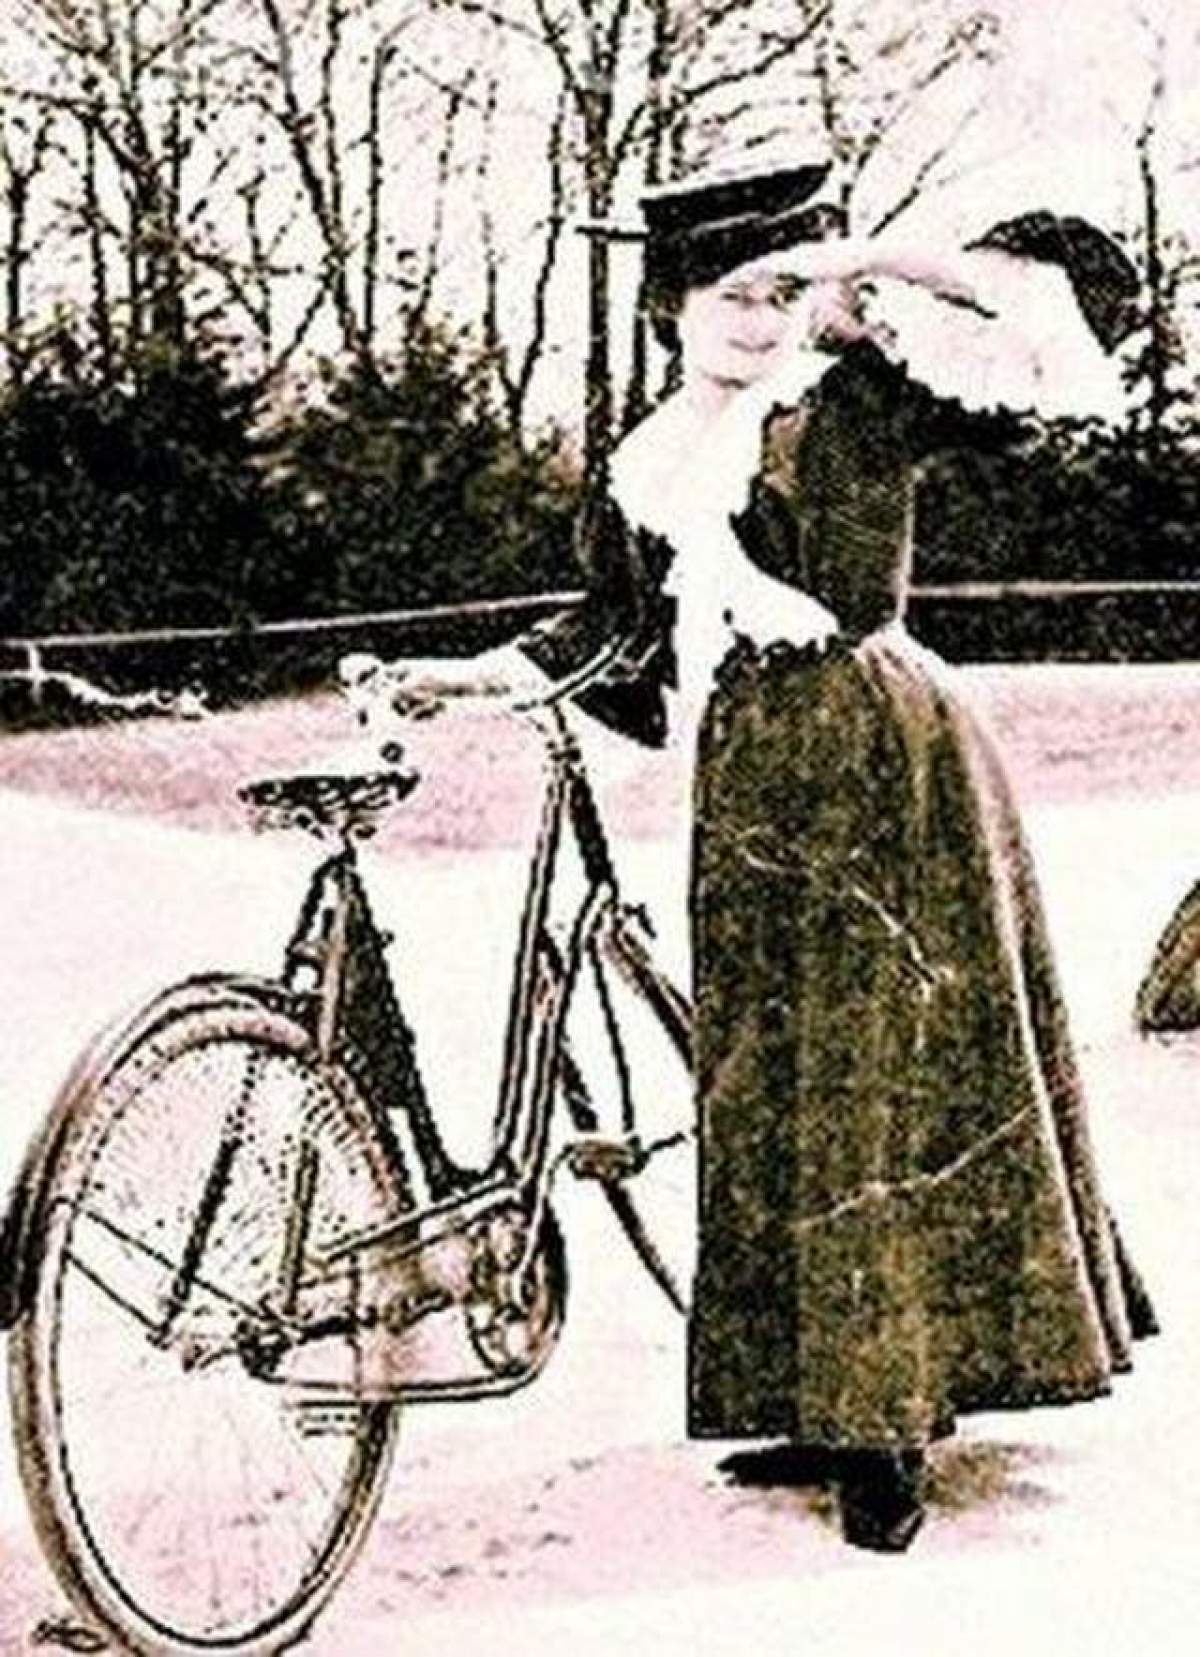 Dezvăluiri senzaţionale! "Miţa Biciclista nu a avut o viaţă scandaloasă! A fost o feministă!"